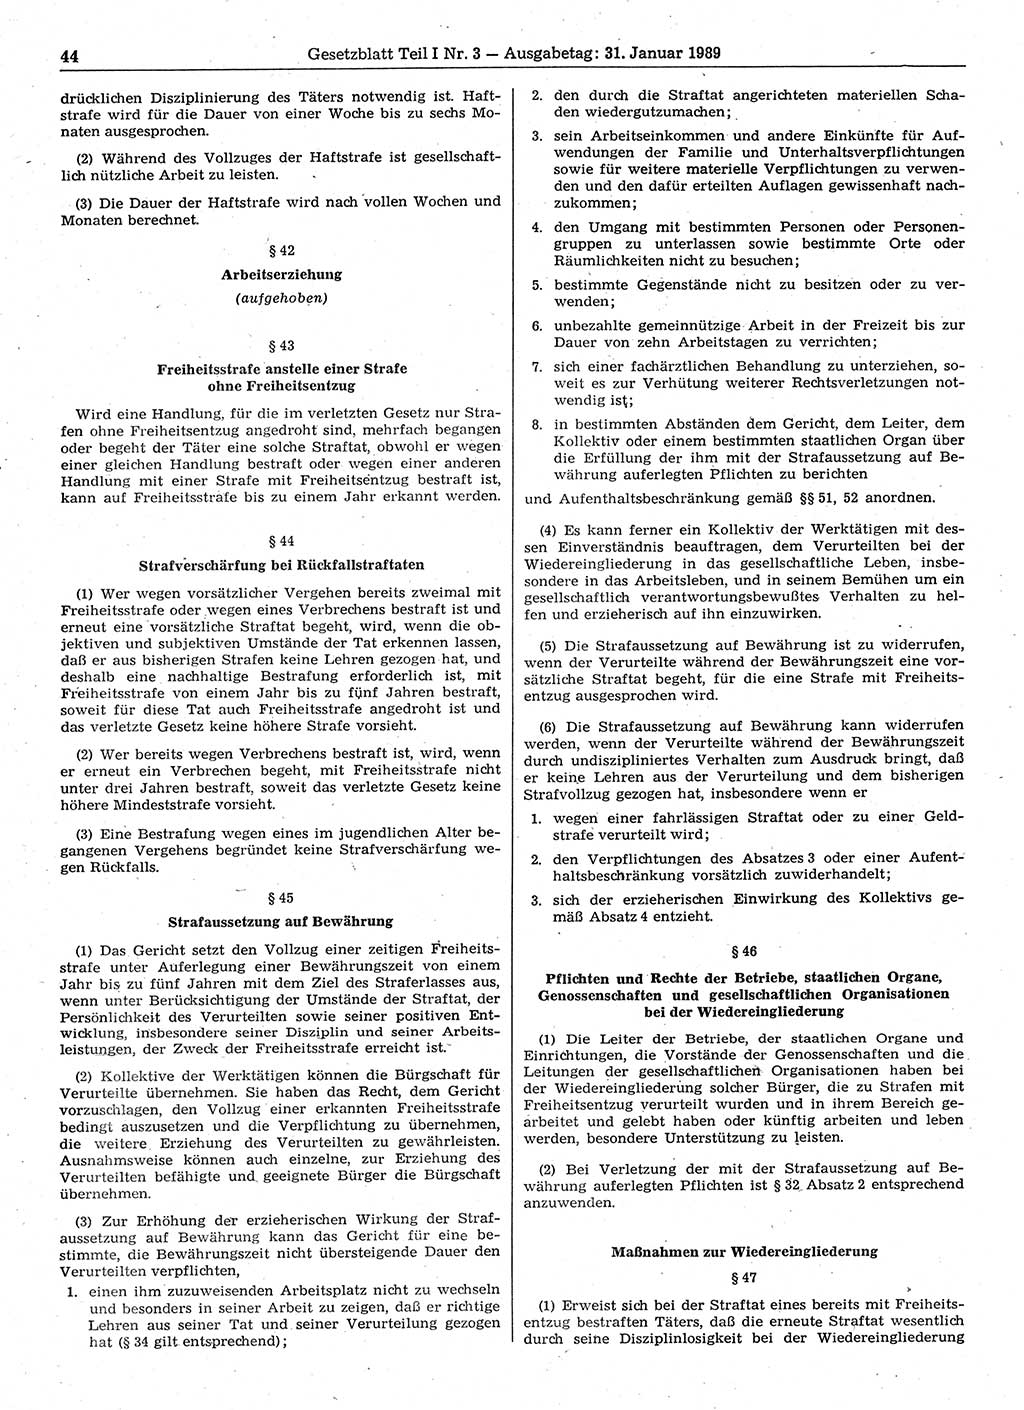 Gesetzblatt (GBl.) der Deutschen Demokratischen Republik (DDR) Teil Ⅰ 1989, Seite 44 (GBl. DDR Ⅰ 1989, S. 44)